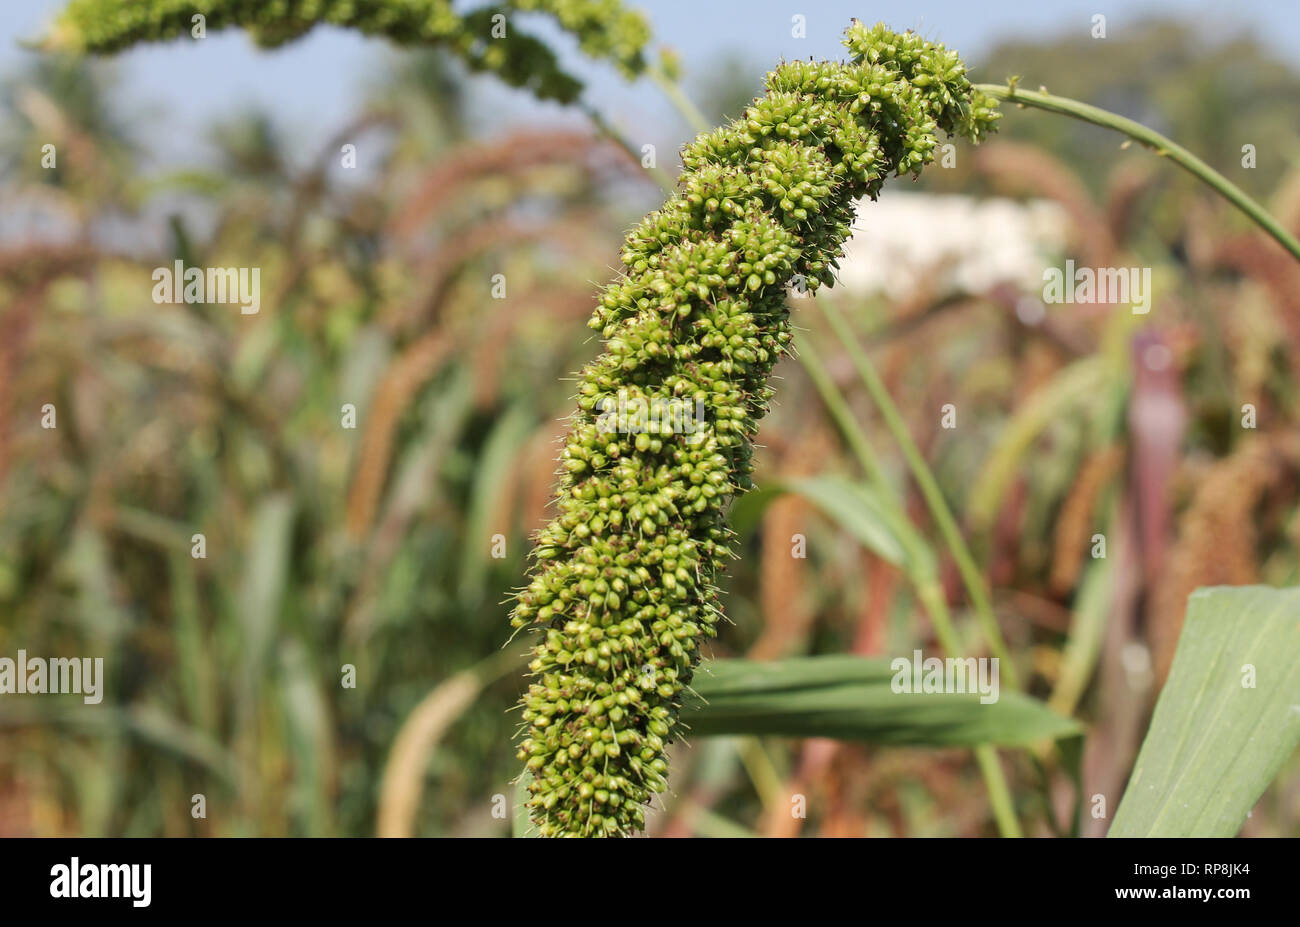 Le millet est une graminée annuelle avec slim, vertical, tiges feuillues Banque D'Images